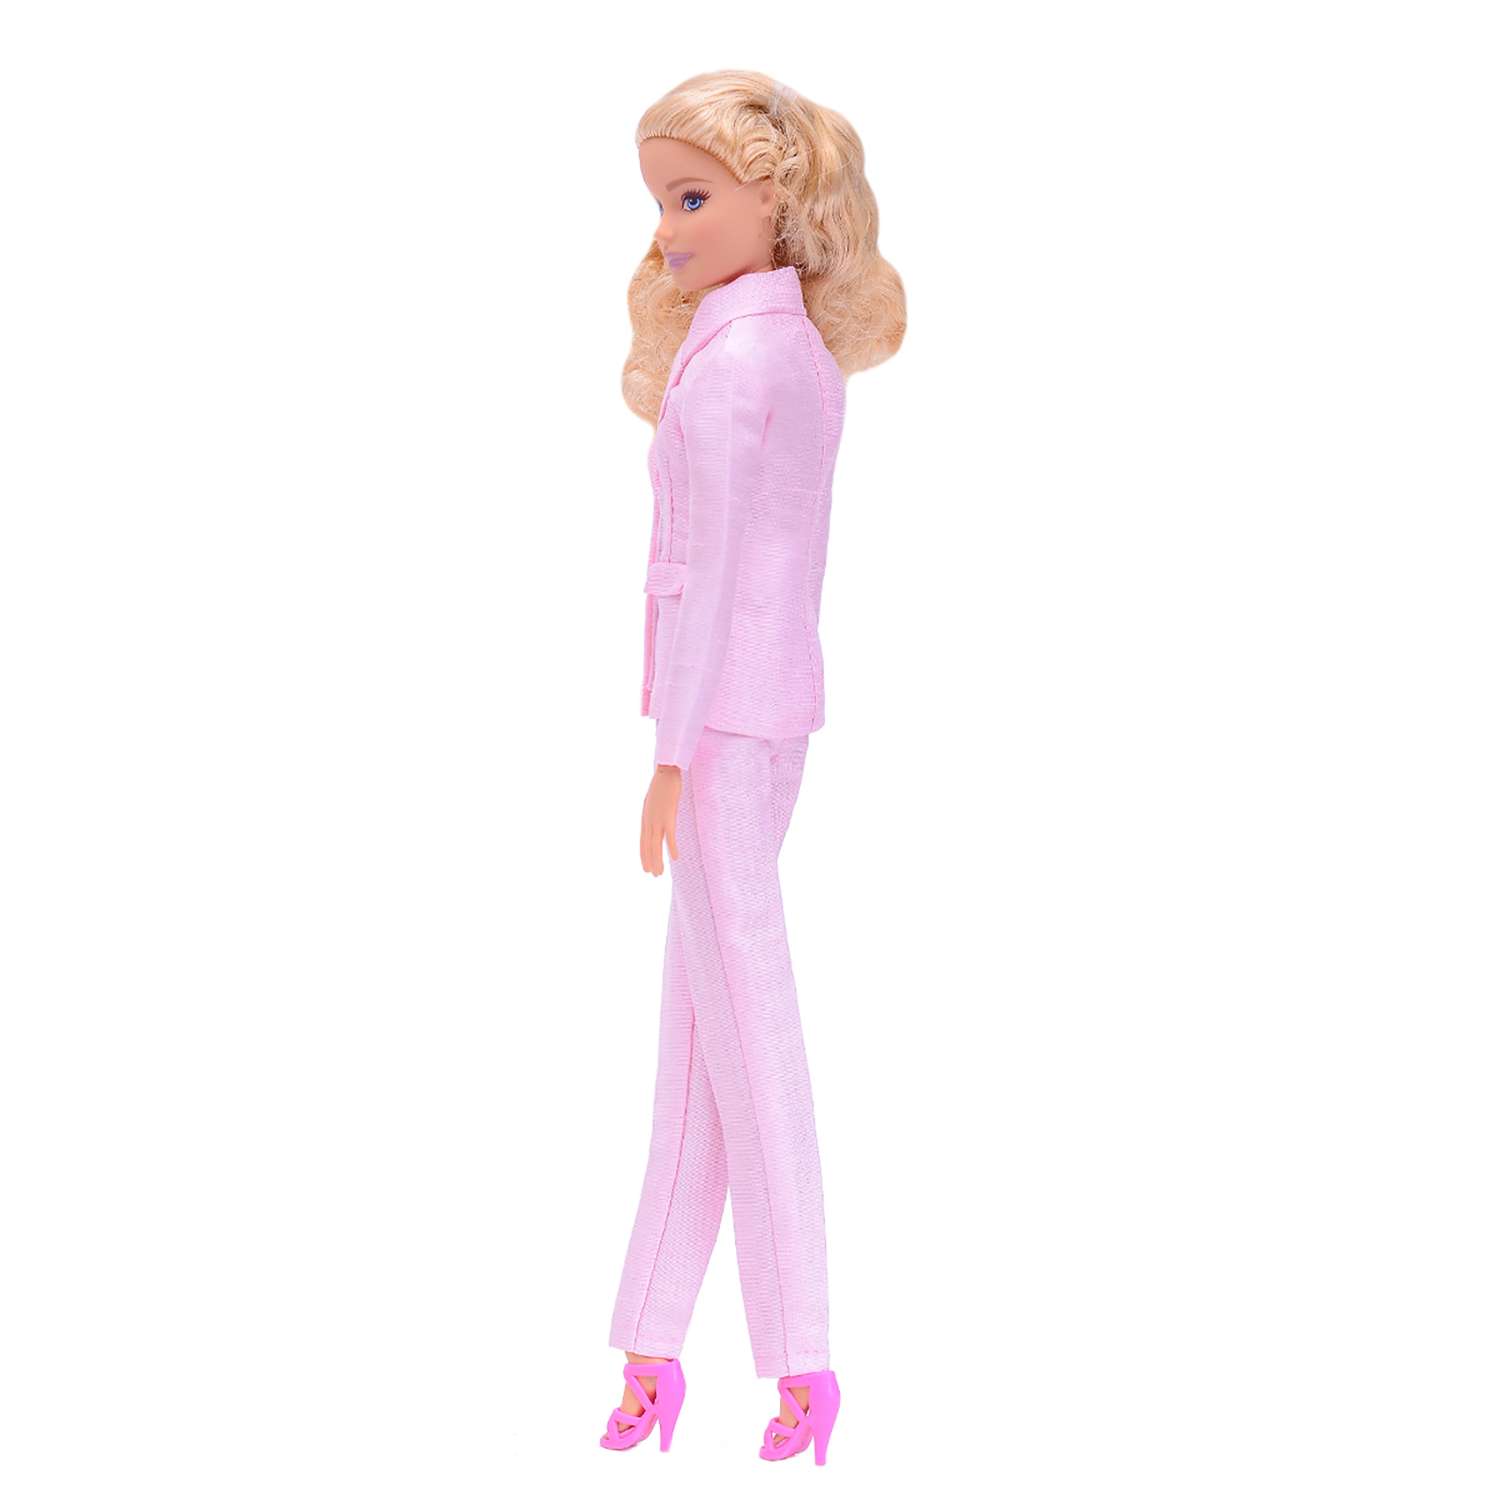 Шелковый брючный костюм Эленприв Светло-розовый для куклы 29 см типа Барби FA-011-04 - фото 7